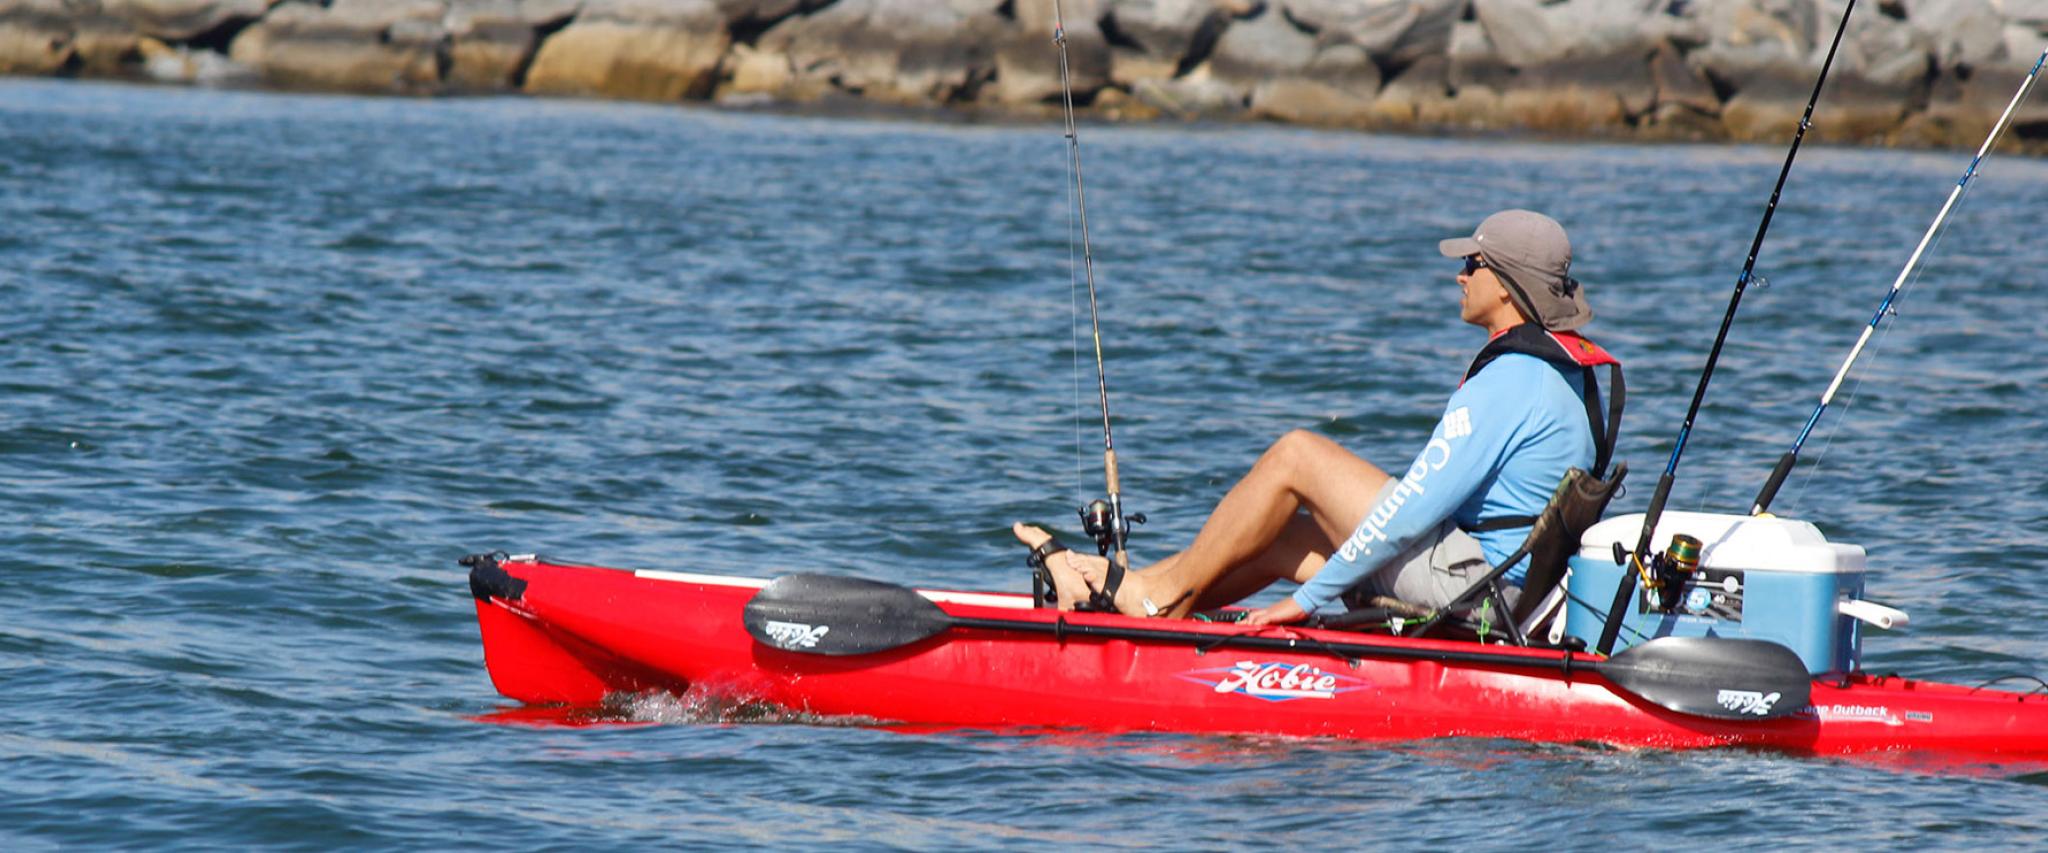 Kayak Fisherman wearing life jacket